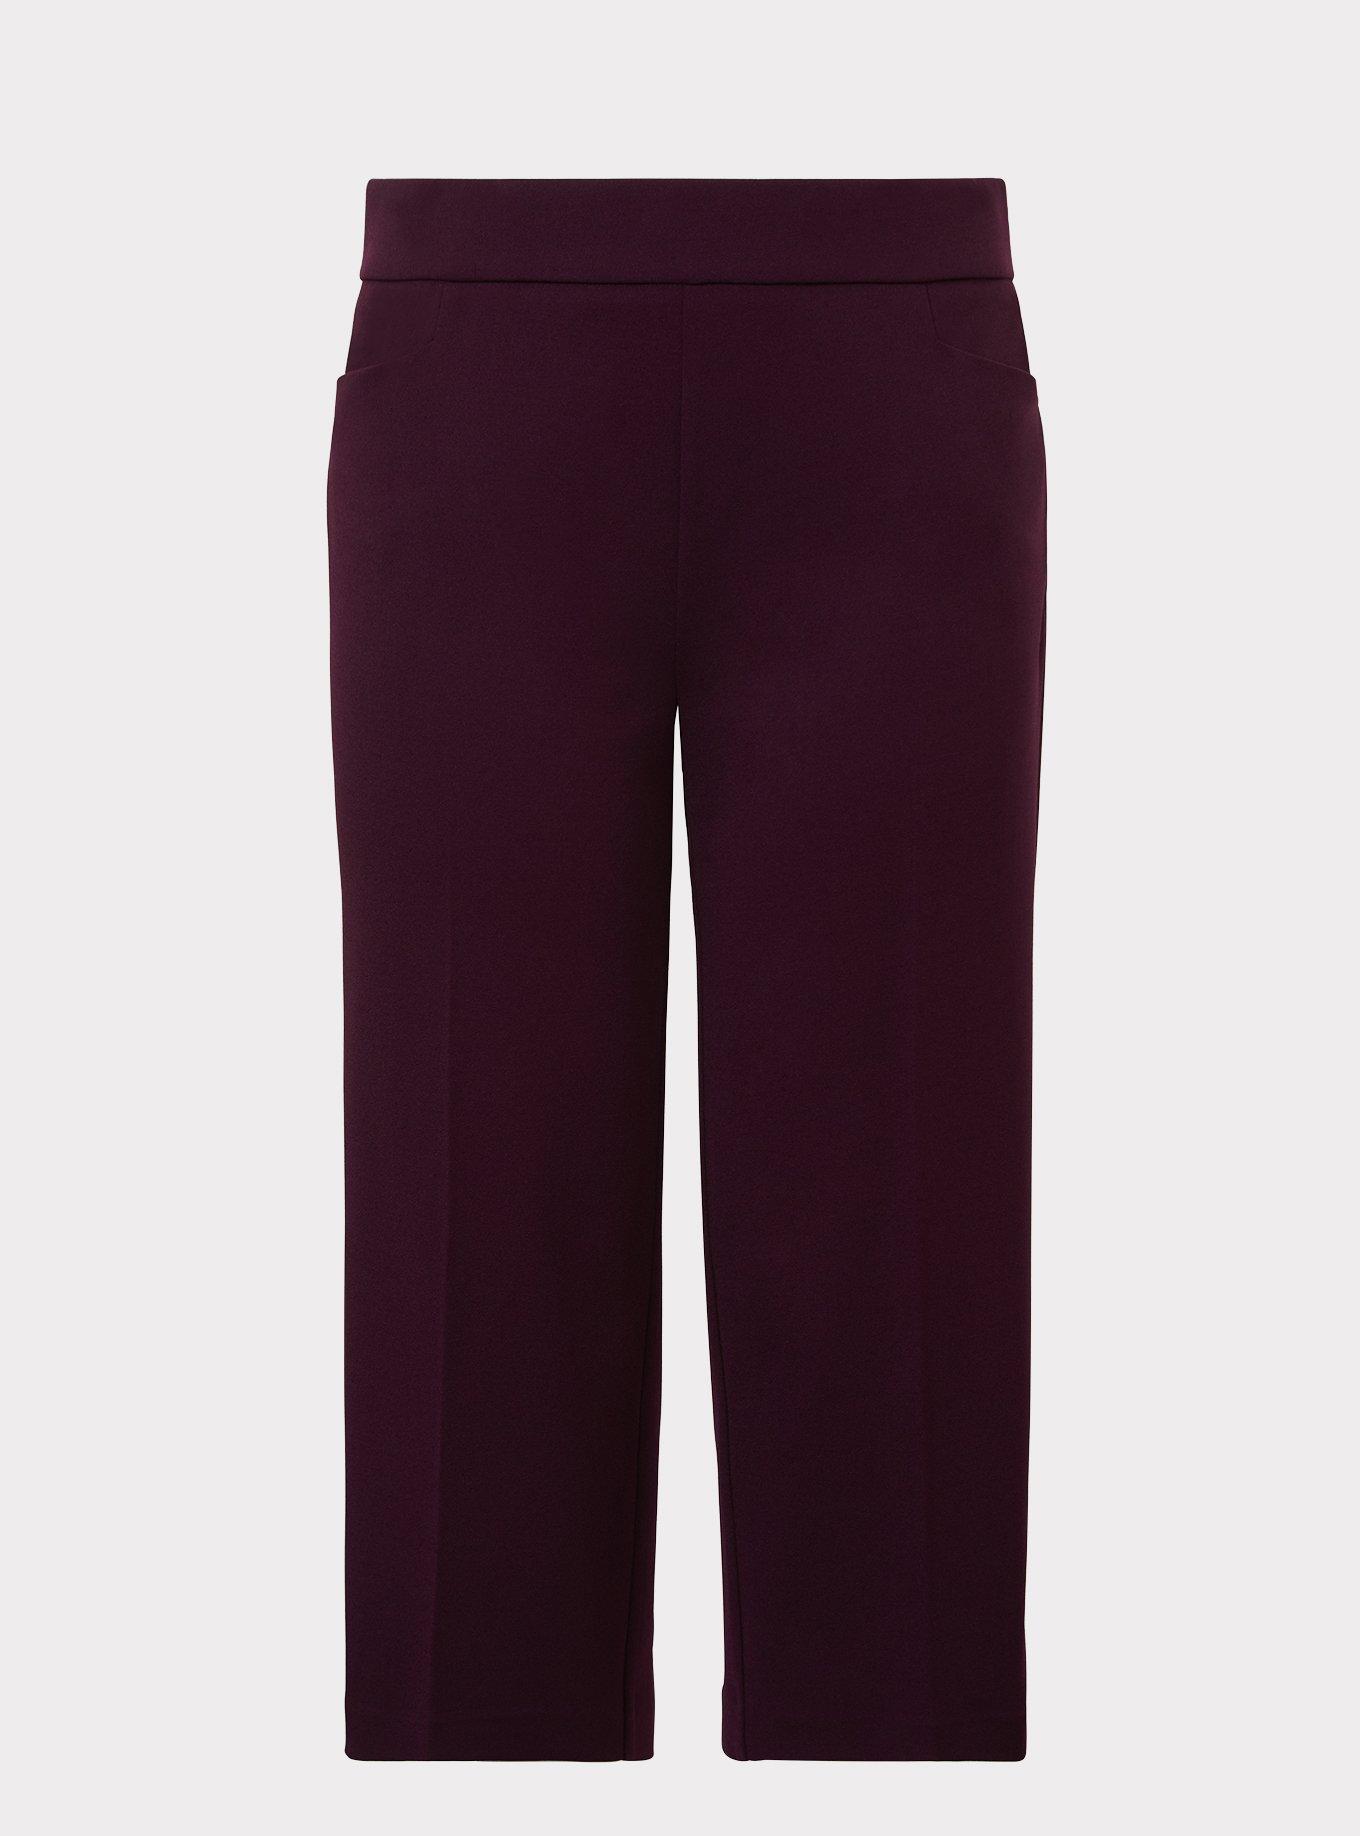 Plus Size - Purple Culotte Pant - Torrid